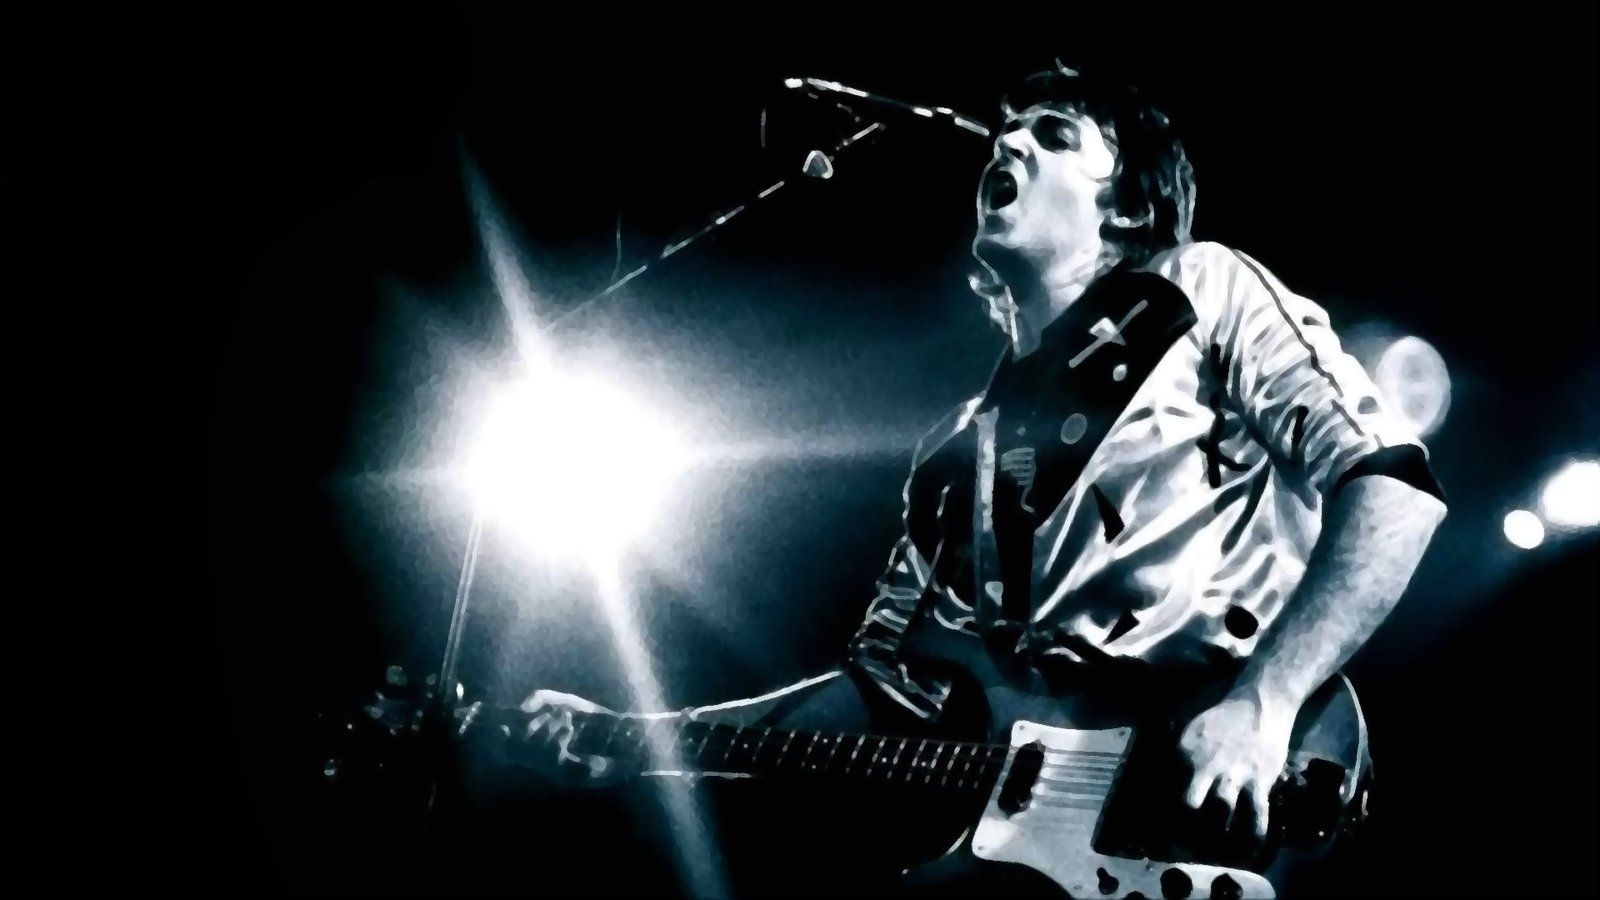 Paul McCartney Live! by LegitTurtle on DeviantArt